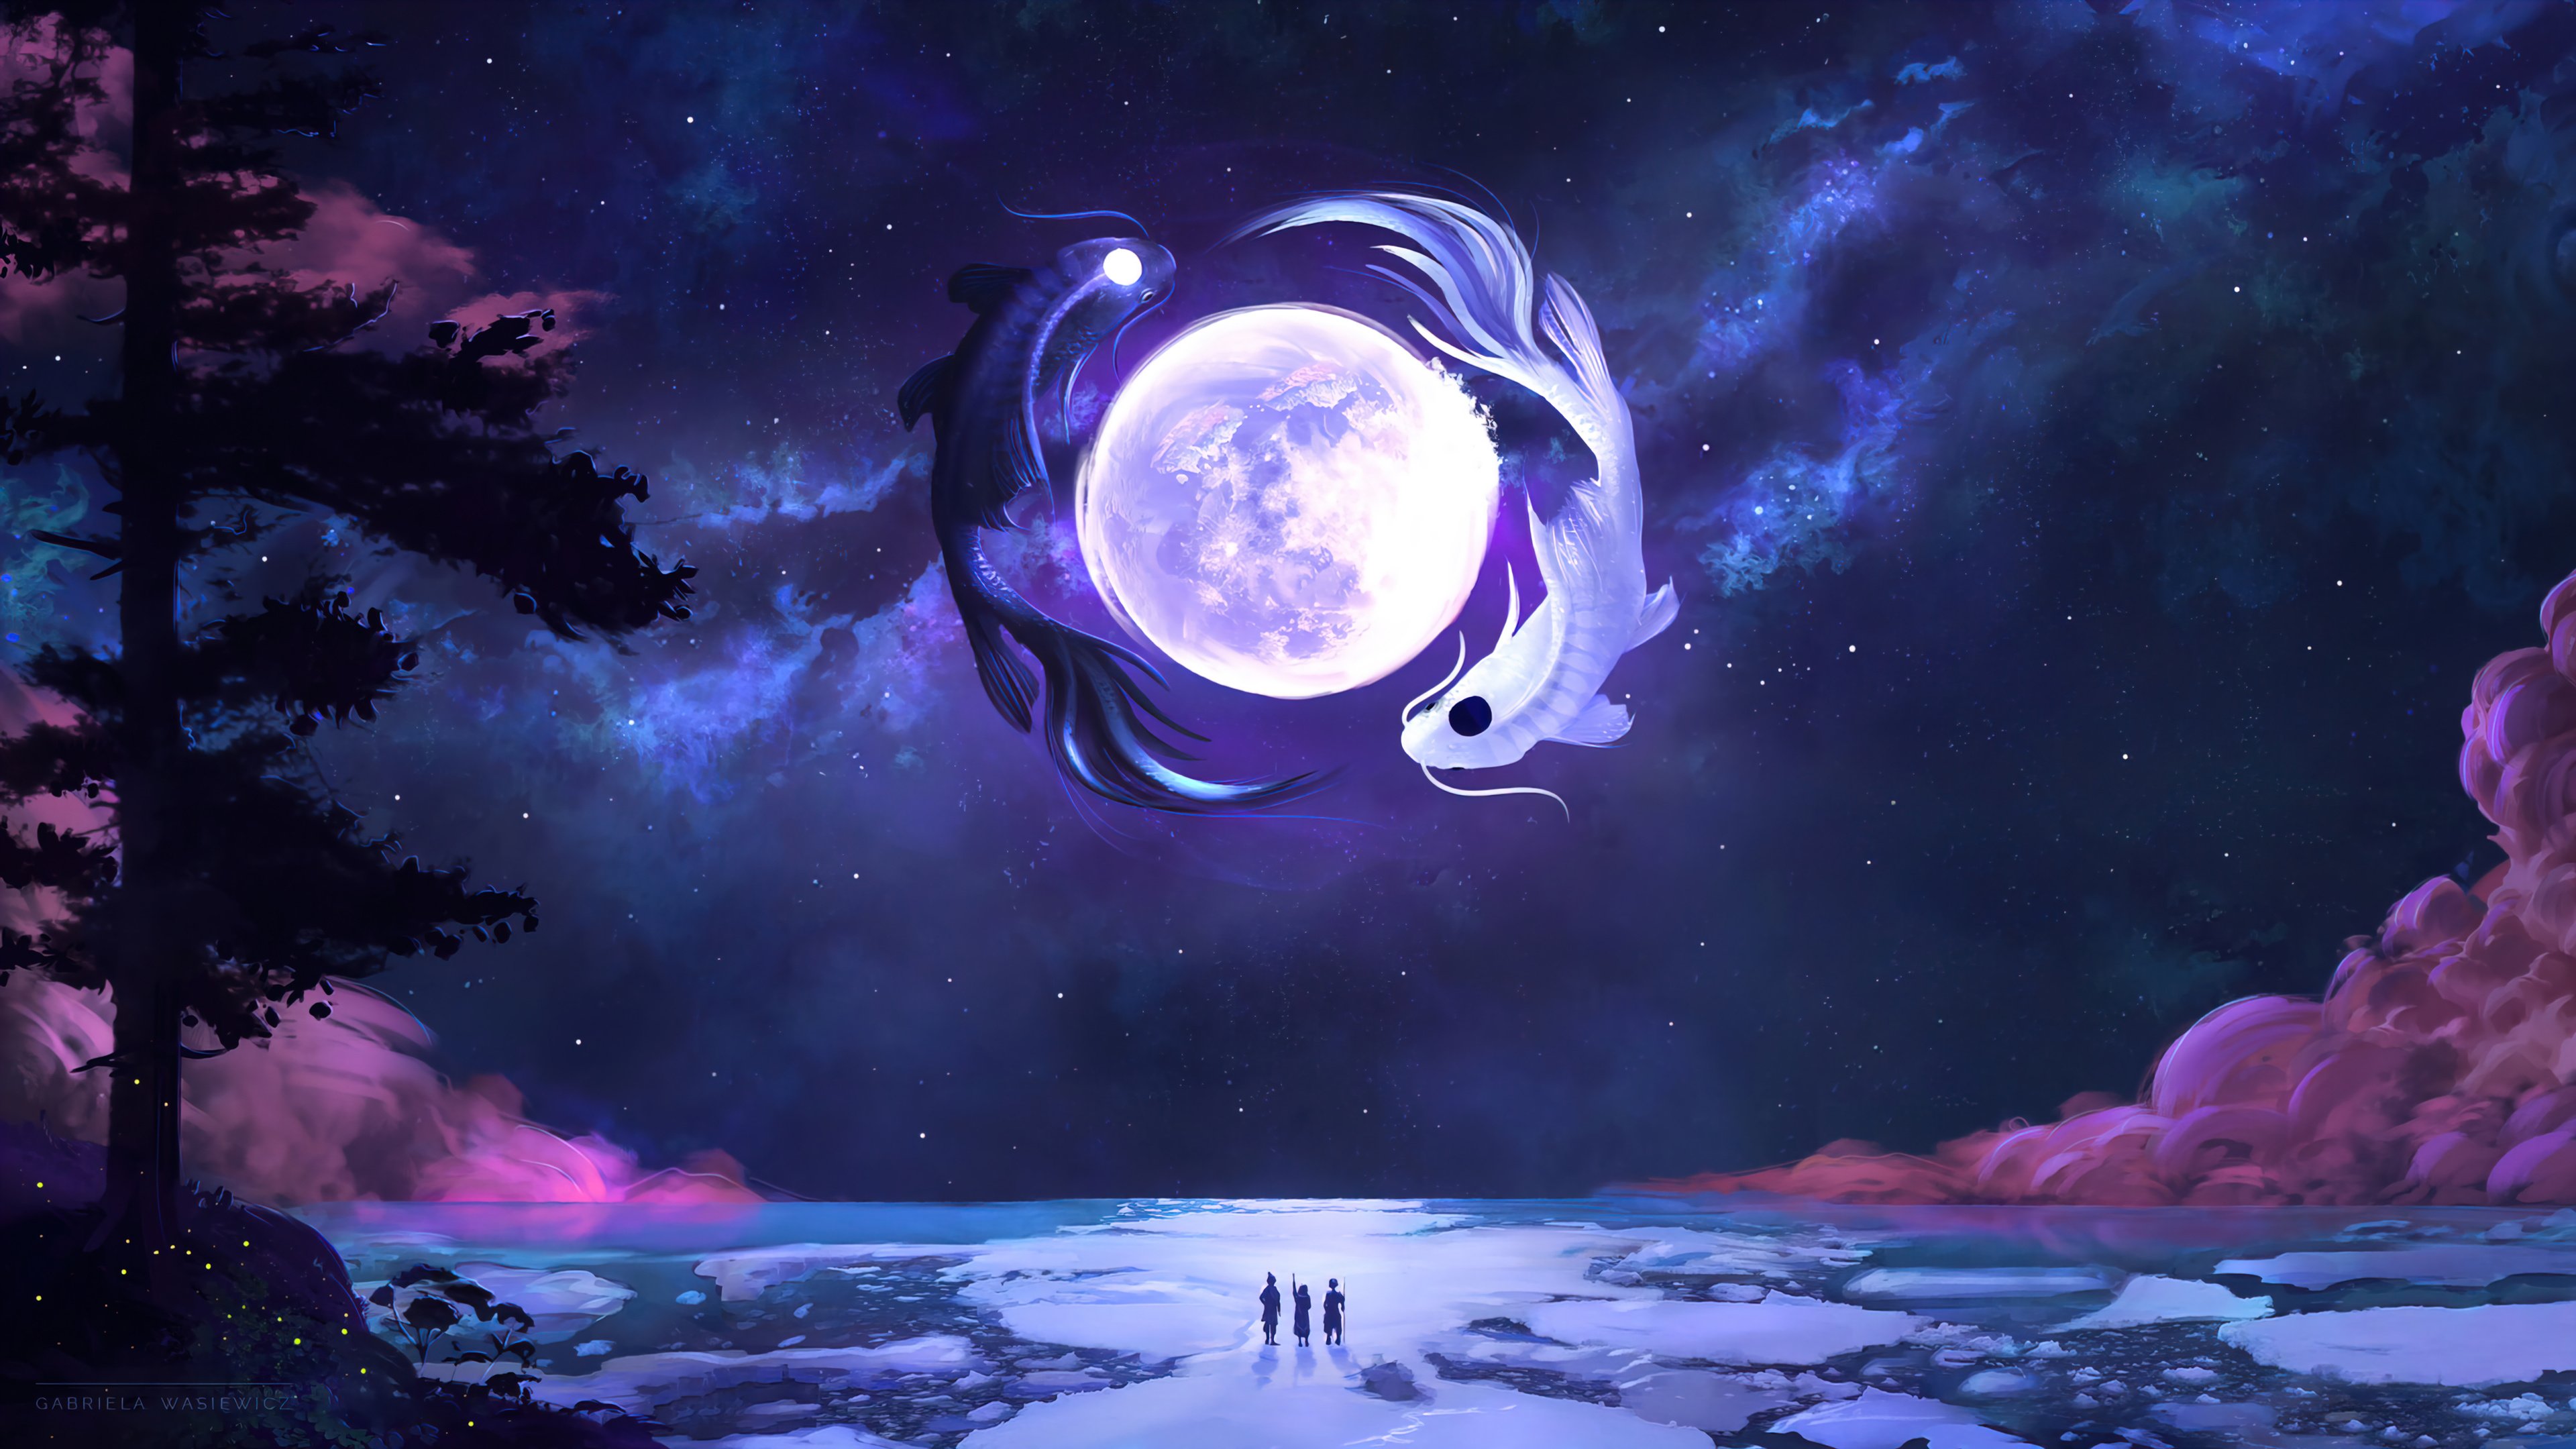 Thế giới anime luôn đầy bất ngờ và mê hoặc. Moon Anime 4k Wallpapers sẽ đưa bạn đến với một thế giới huyền ảo, nơi trăng lên trên những cánh đồng, lấp lánh như một viên ngọc. Hãy xem những nhân vật yêu kiều cùng bạn tận hưởng khoảnh khắc tuyệt vời bên vầng trăng.